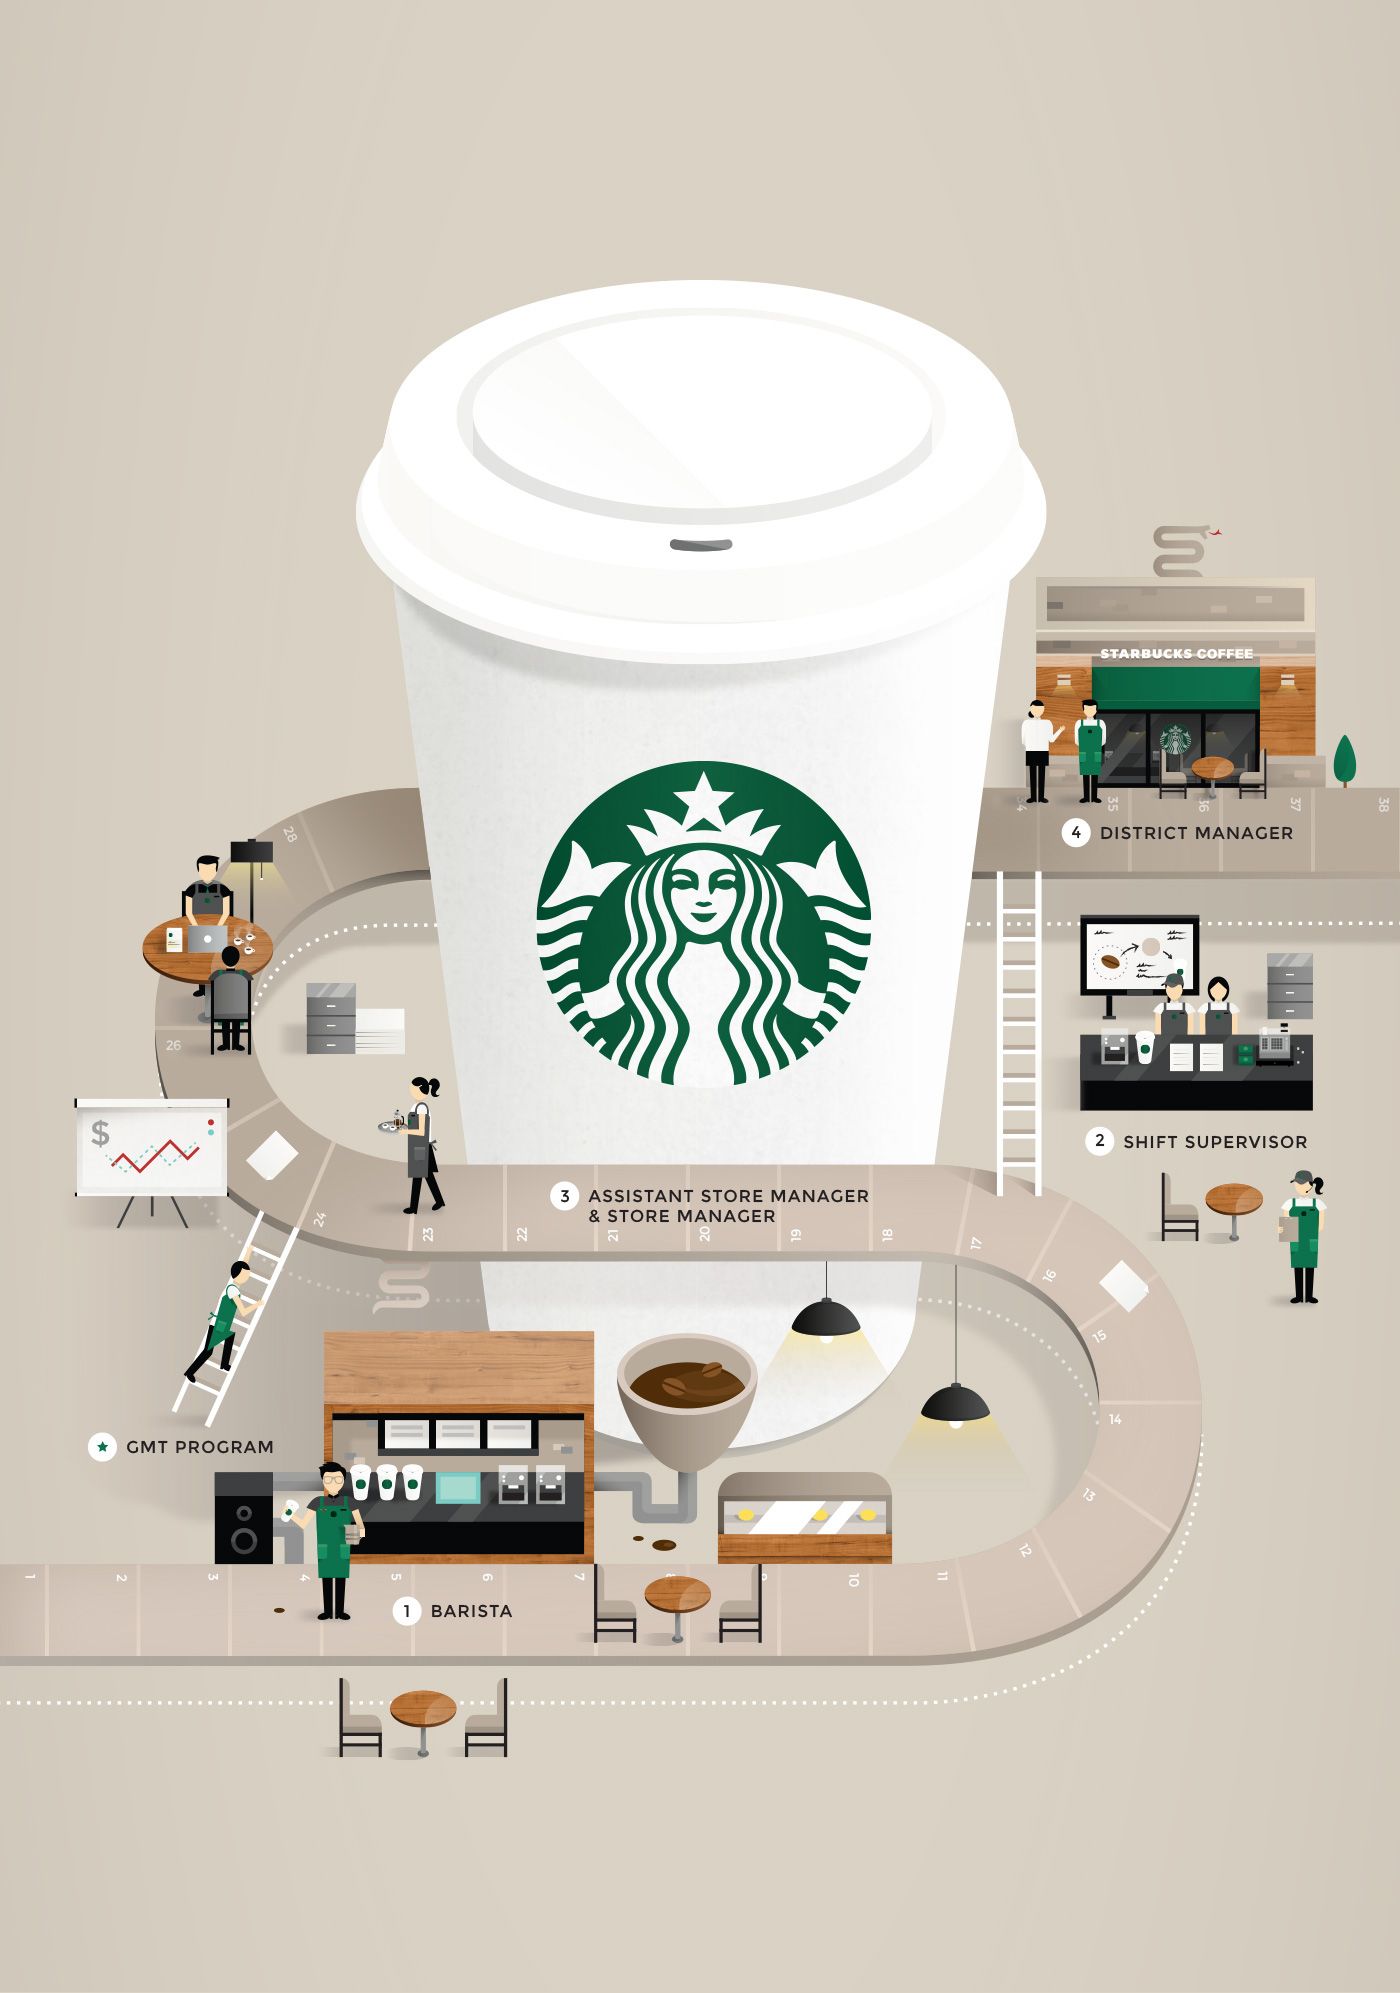 Starbucks Career Guide